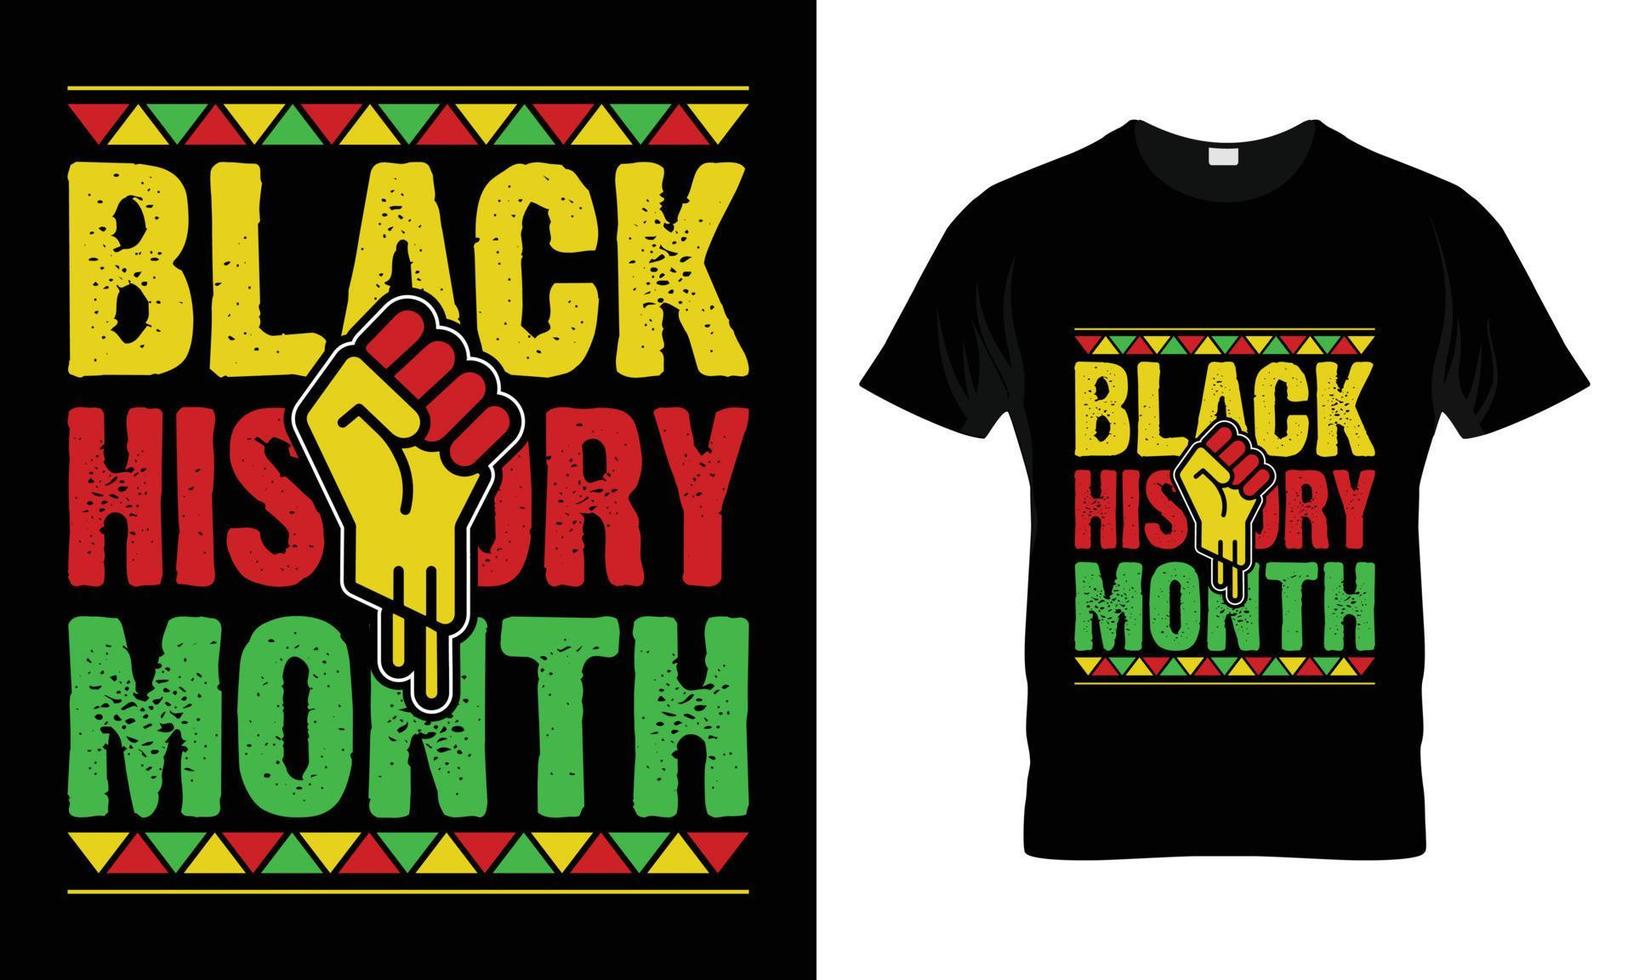 conception de t-shirt du mois de l'histoire des noirs vecteur